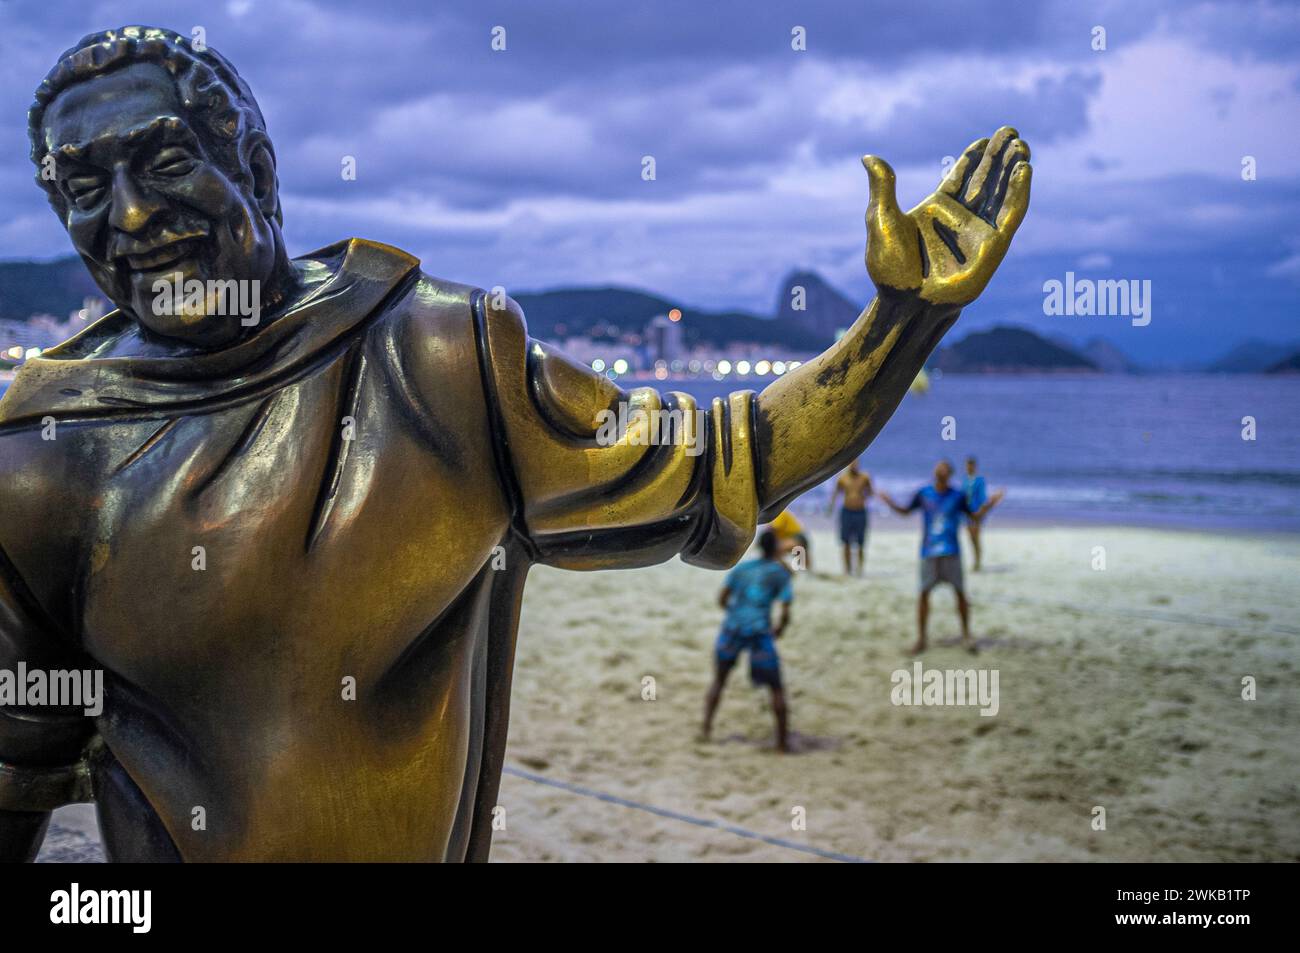 Statue de Dorival Caymmi (30 avril 1914 – 16 août 2008) sur la promenade de la plage de Copacabana, pain de sucre en arrière-plan, Rio de Janeiro, Brésil. Caymmi était un chanteur, auteur-compositeur, acteur et peintre brésilien actif depuis plus de 70 ans. Il a contribué à la naissance du mouvement bossa nova au Brésil, et plusieurs de ses morceaux de samba sont devenus des incontournables de la musique populaire brésilienne. Tout aussi remarquables sont ses ballades célébrant les pêcheurs et les femmes de Bahia. Caymmi a composé environ 100 chansons au cours de sa vie, et beaucoup de ses œuvres sont maintenant considérées comme des classiques brésiliens. Banque D'Images